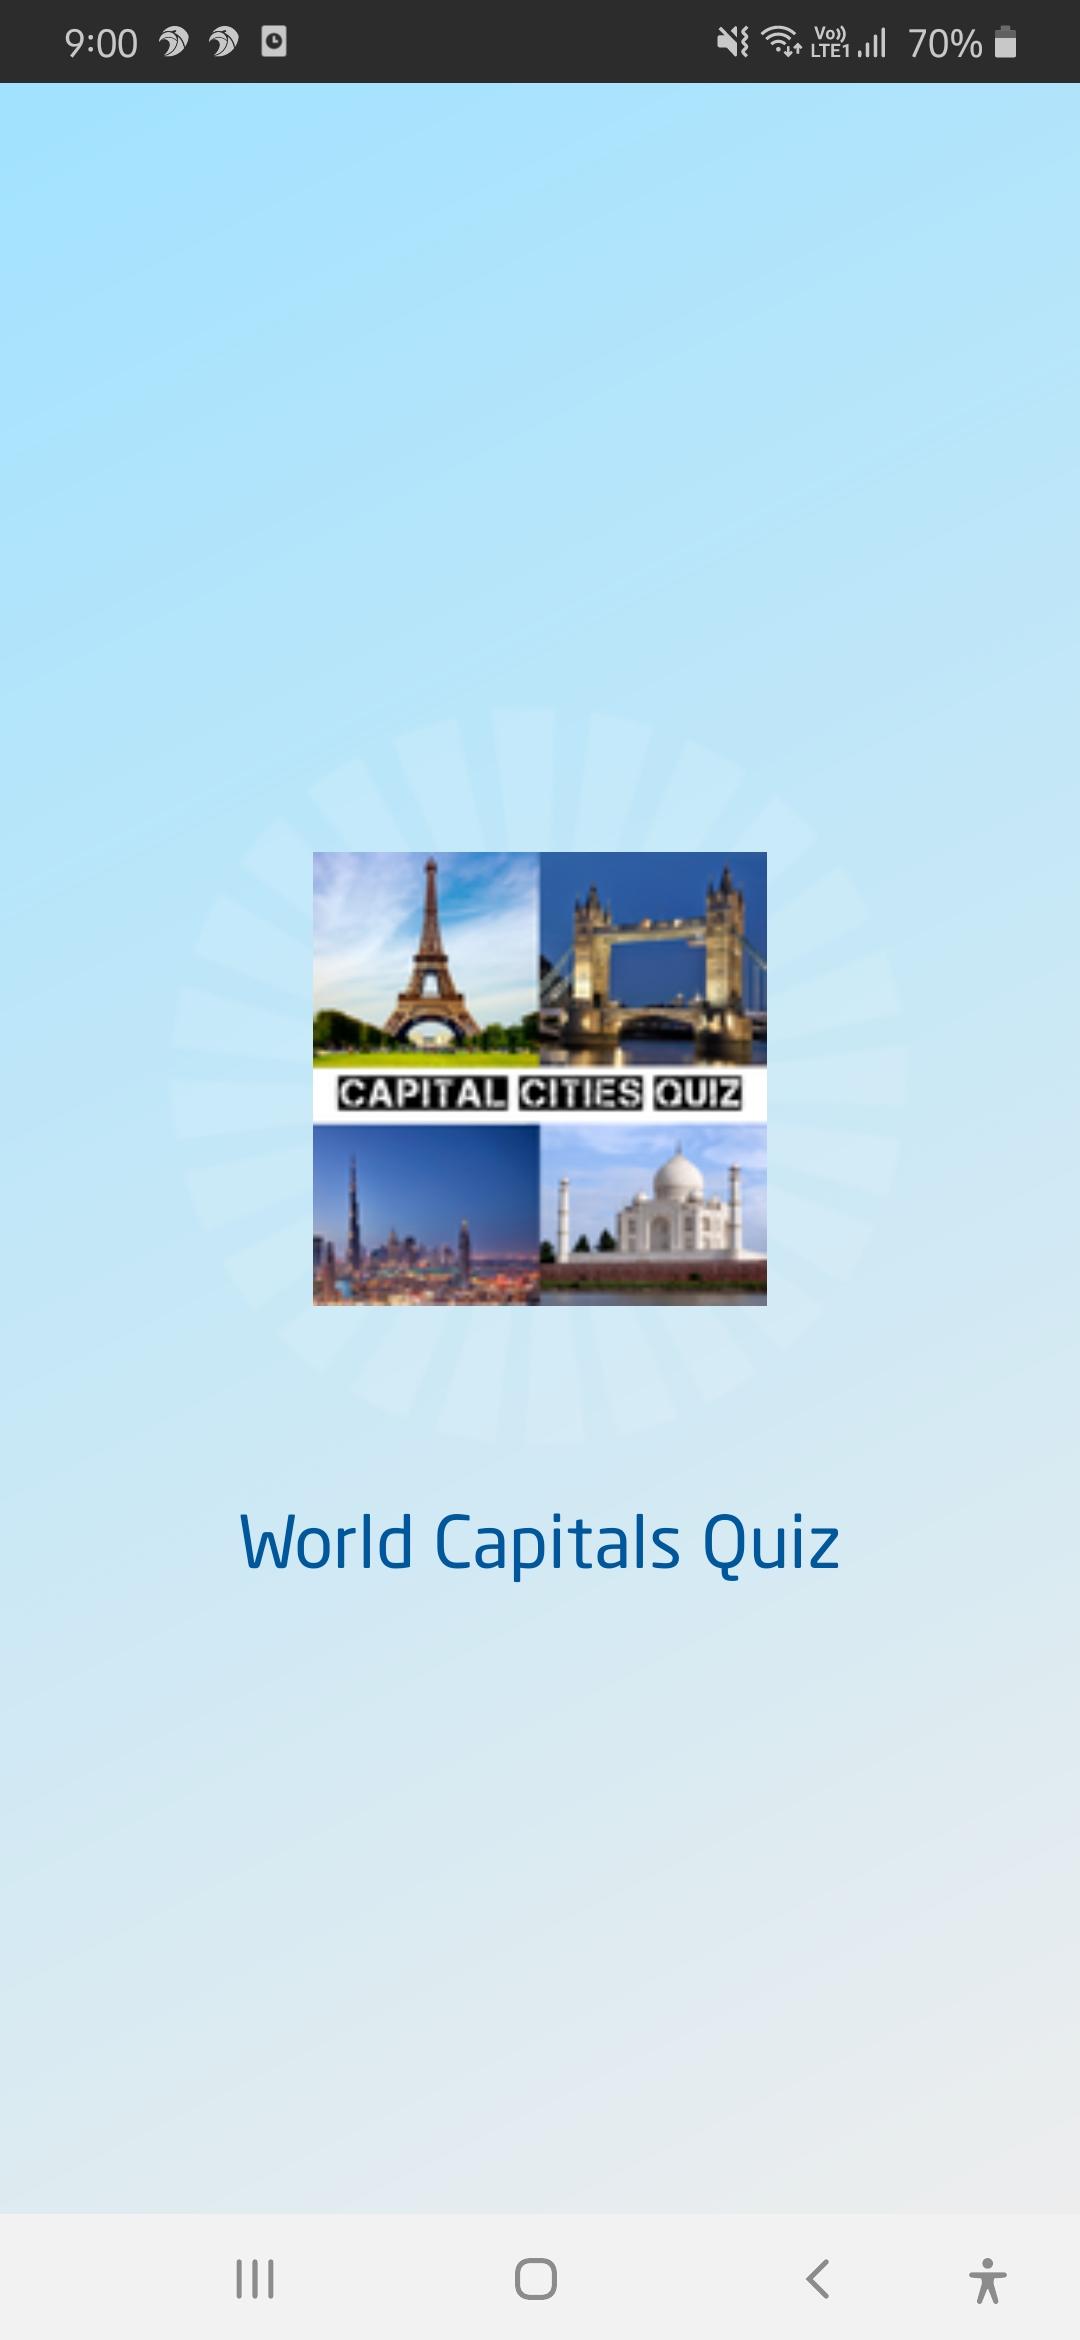 Capital Cities Quiz - World Capitals Quiz Game 3.0 Screenshot 7